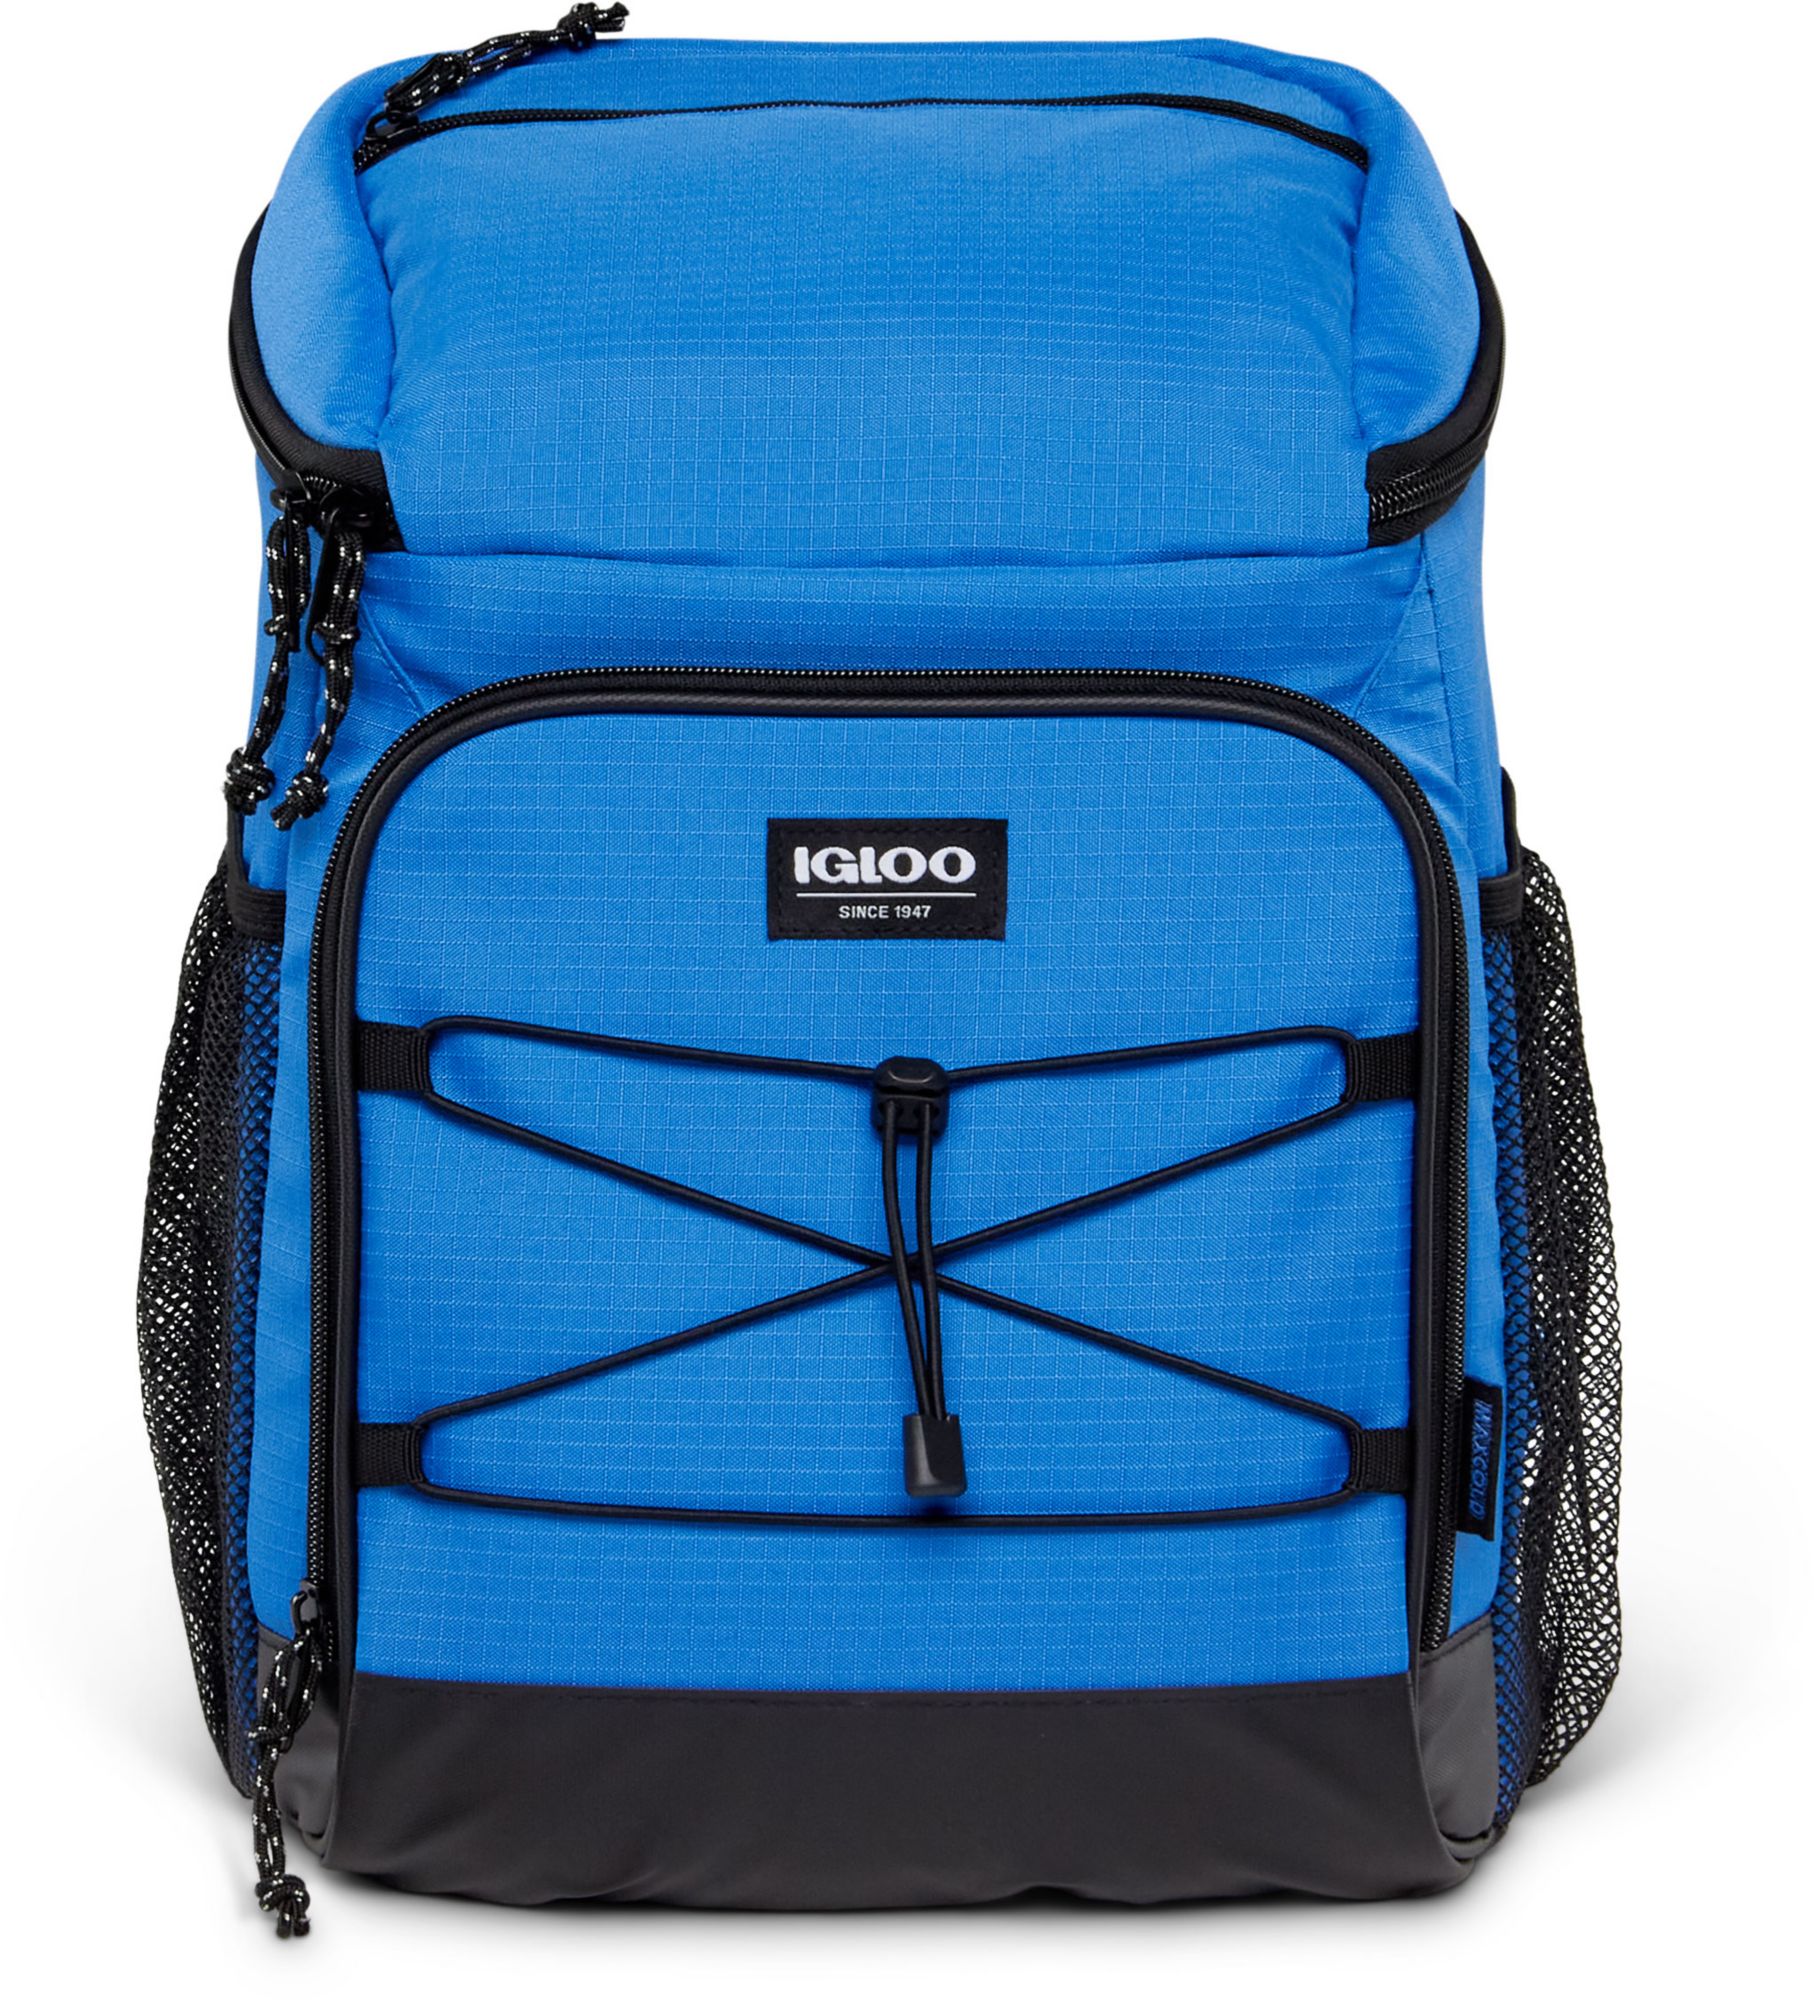 Igloo / Ringleader Refiner Cooler Backpack